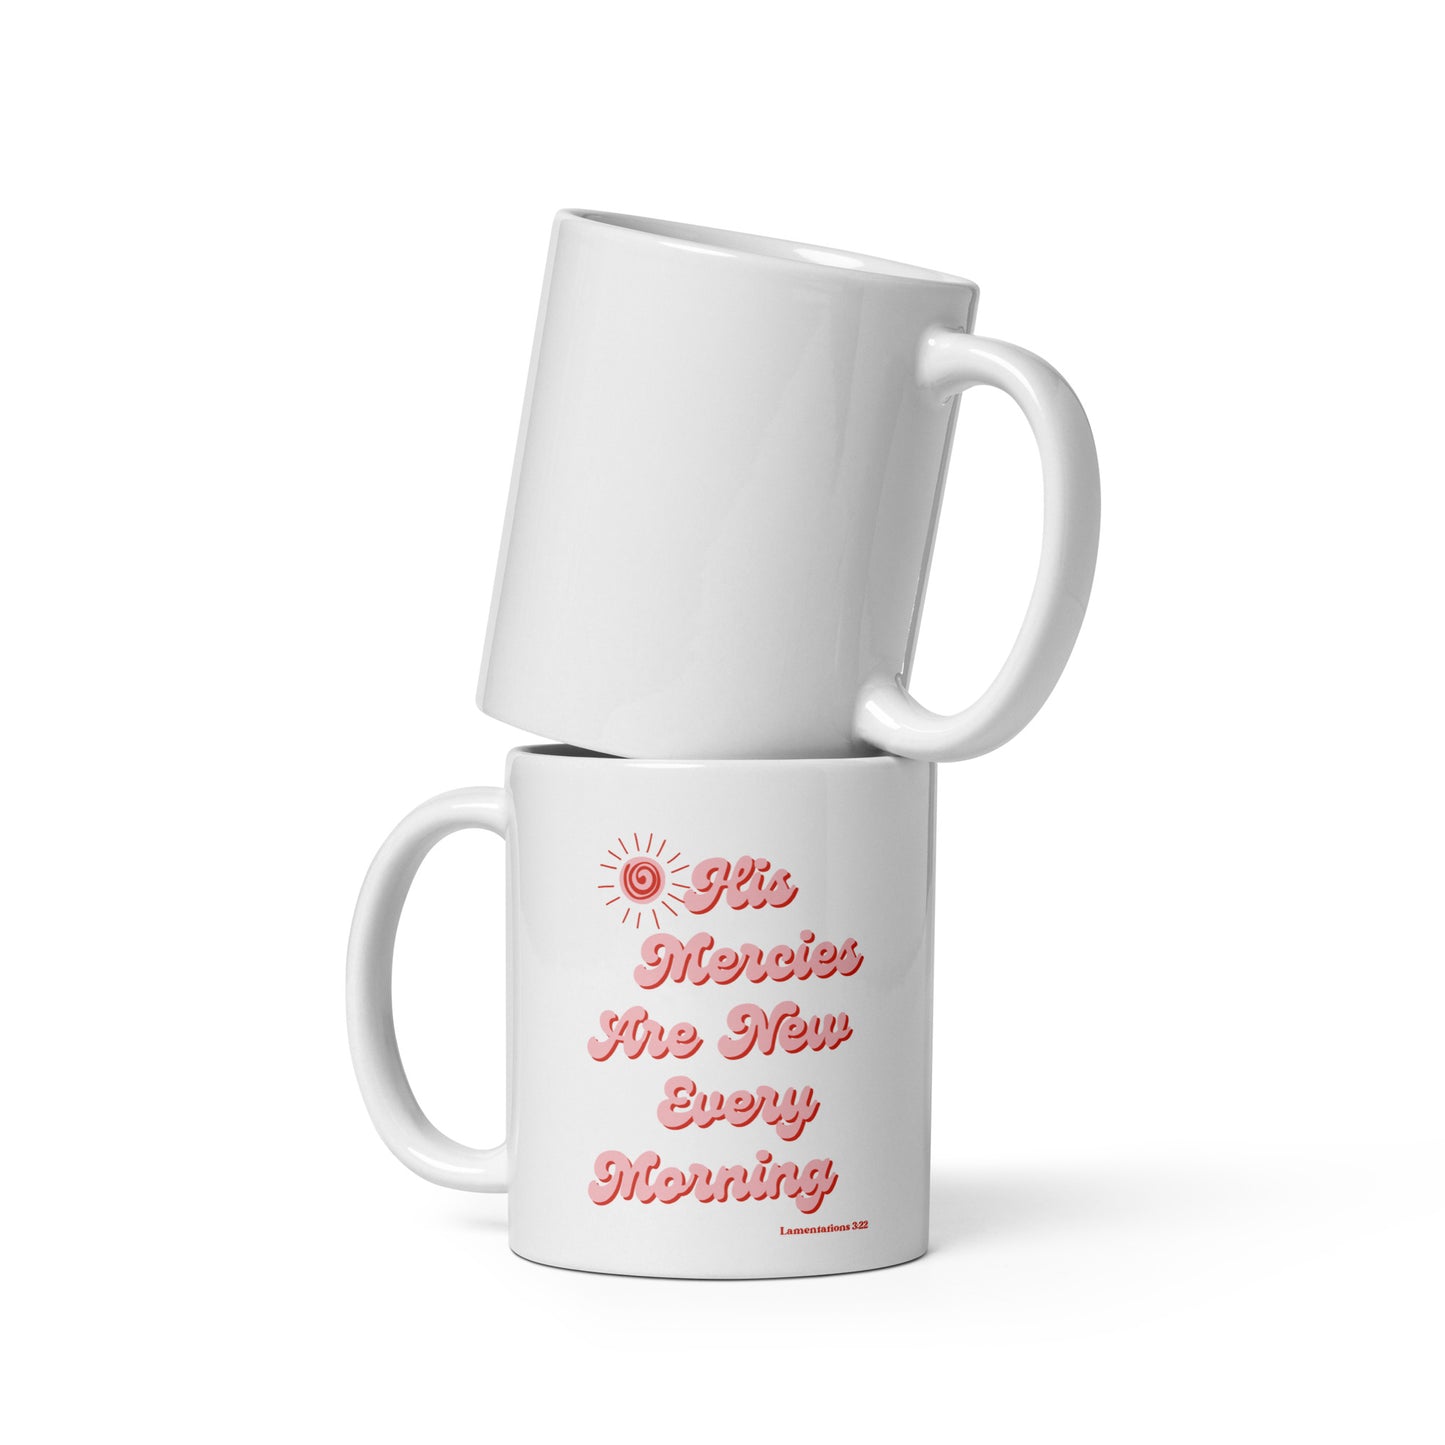 11 oz. Coffee Mug